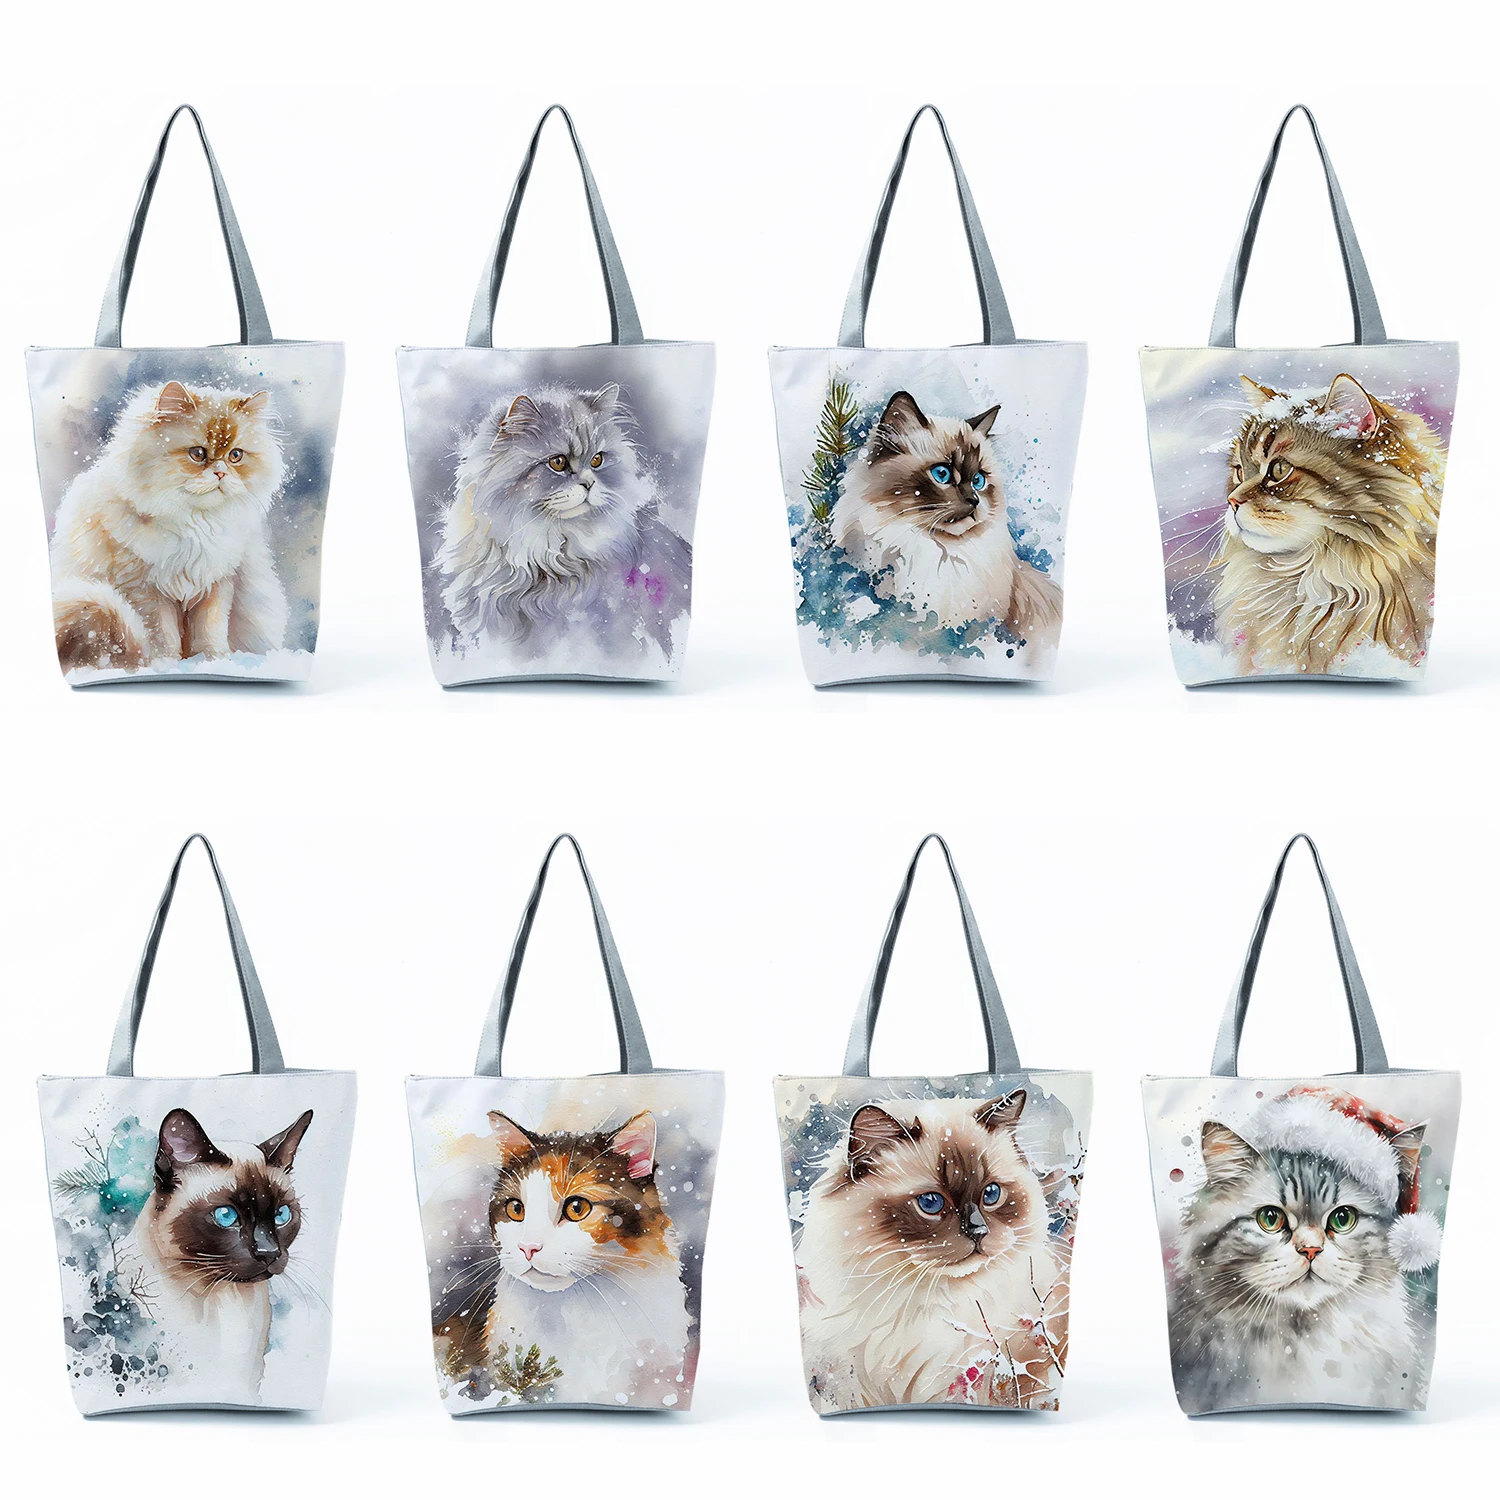 Cute Watercolor Cat Print Handbags High Capacity Casual Women Tote Bags Pretty Cartoon Shopping Bags Foldable Travel Beach Bags